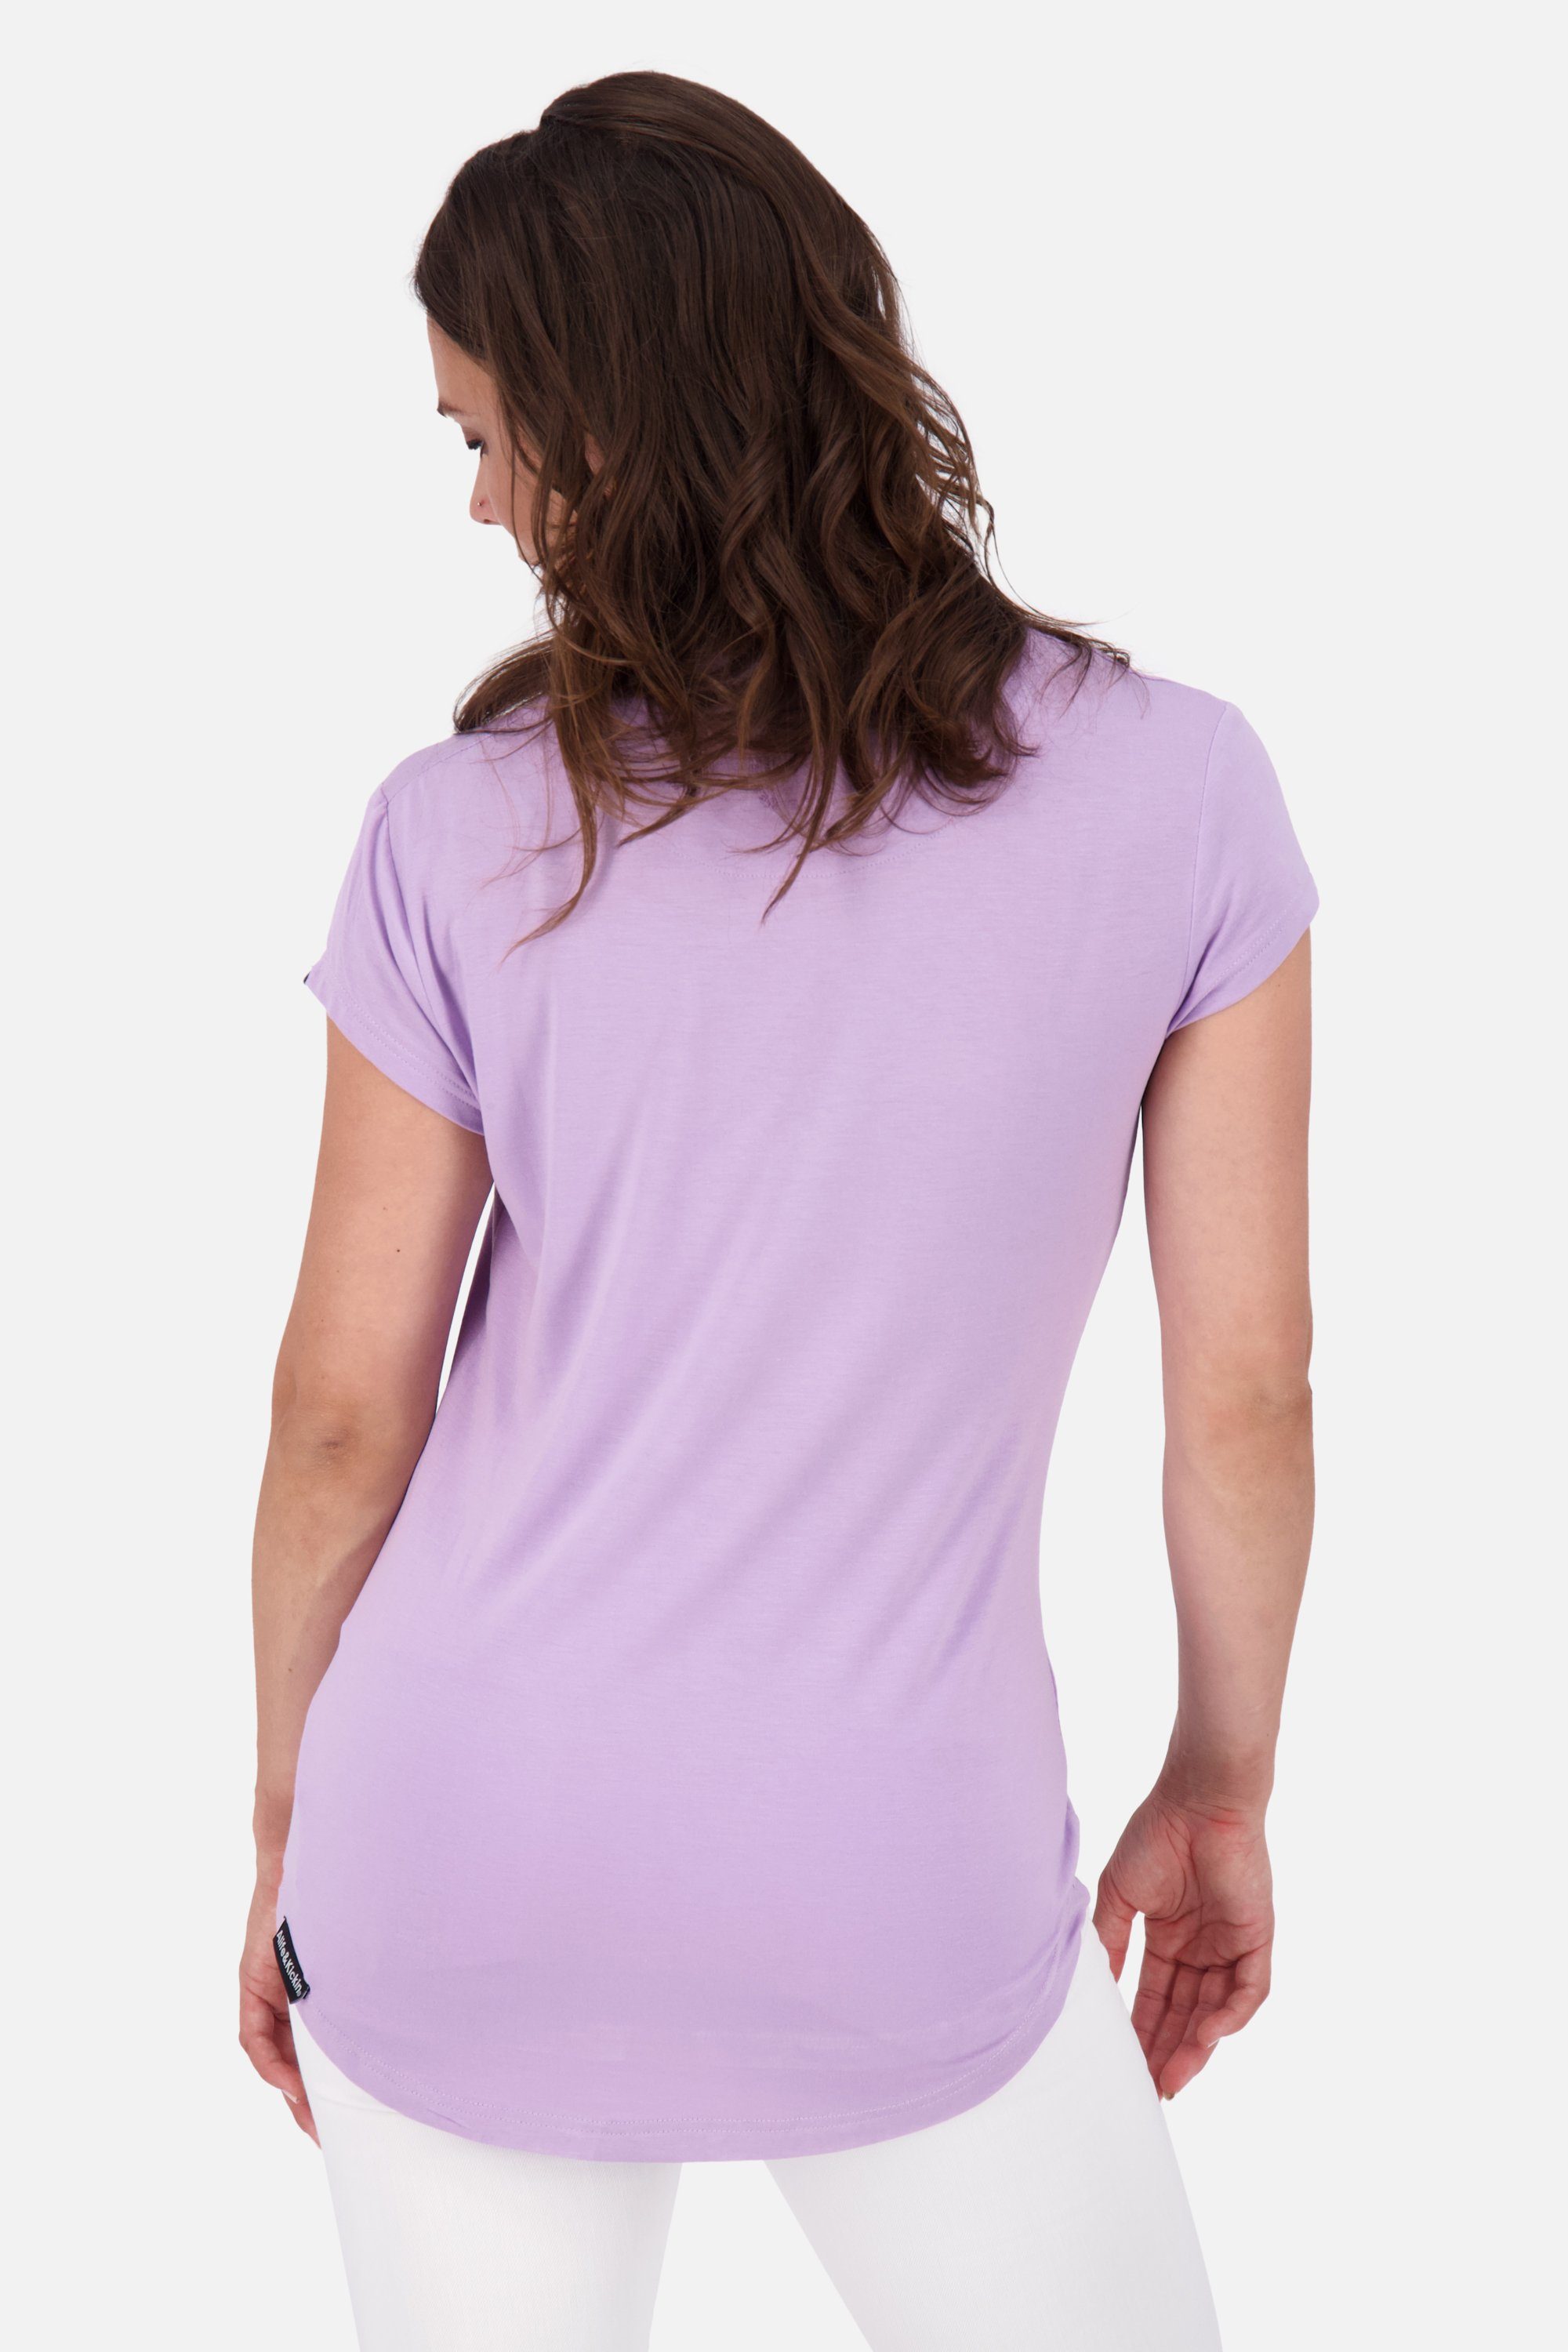 Alife & Kurzarmshirt, Kickin lavender MimmyAK Damen Shirt Rundhalsshirt Shirt digital A